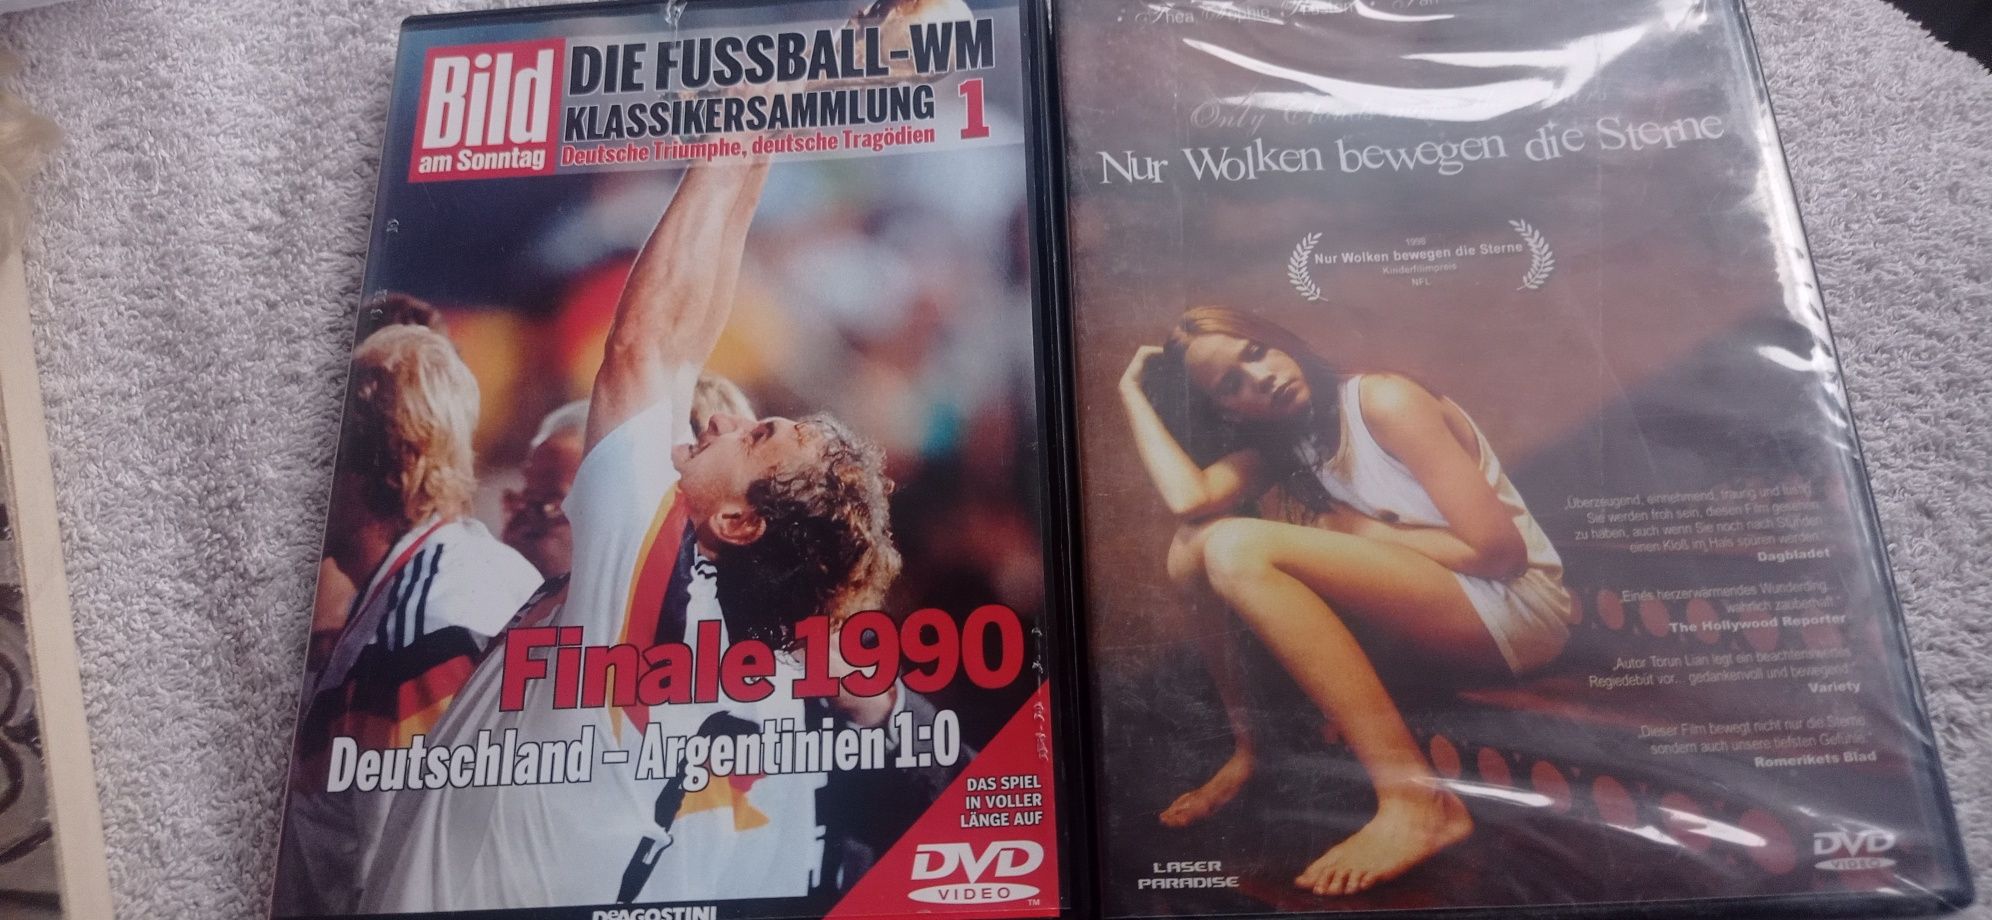 Filmy dvd Nur wolken bewegen die sterne filmy niemieckie